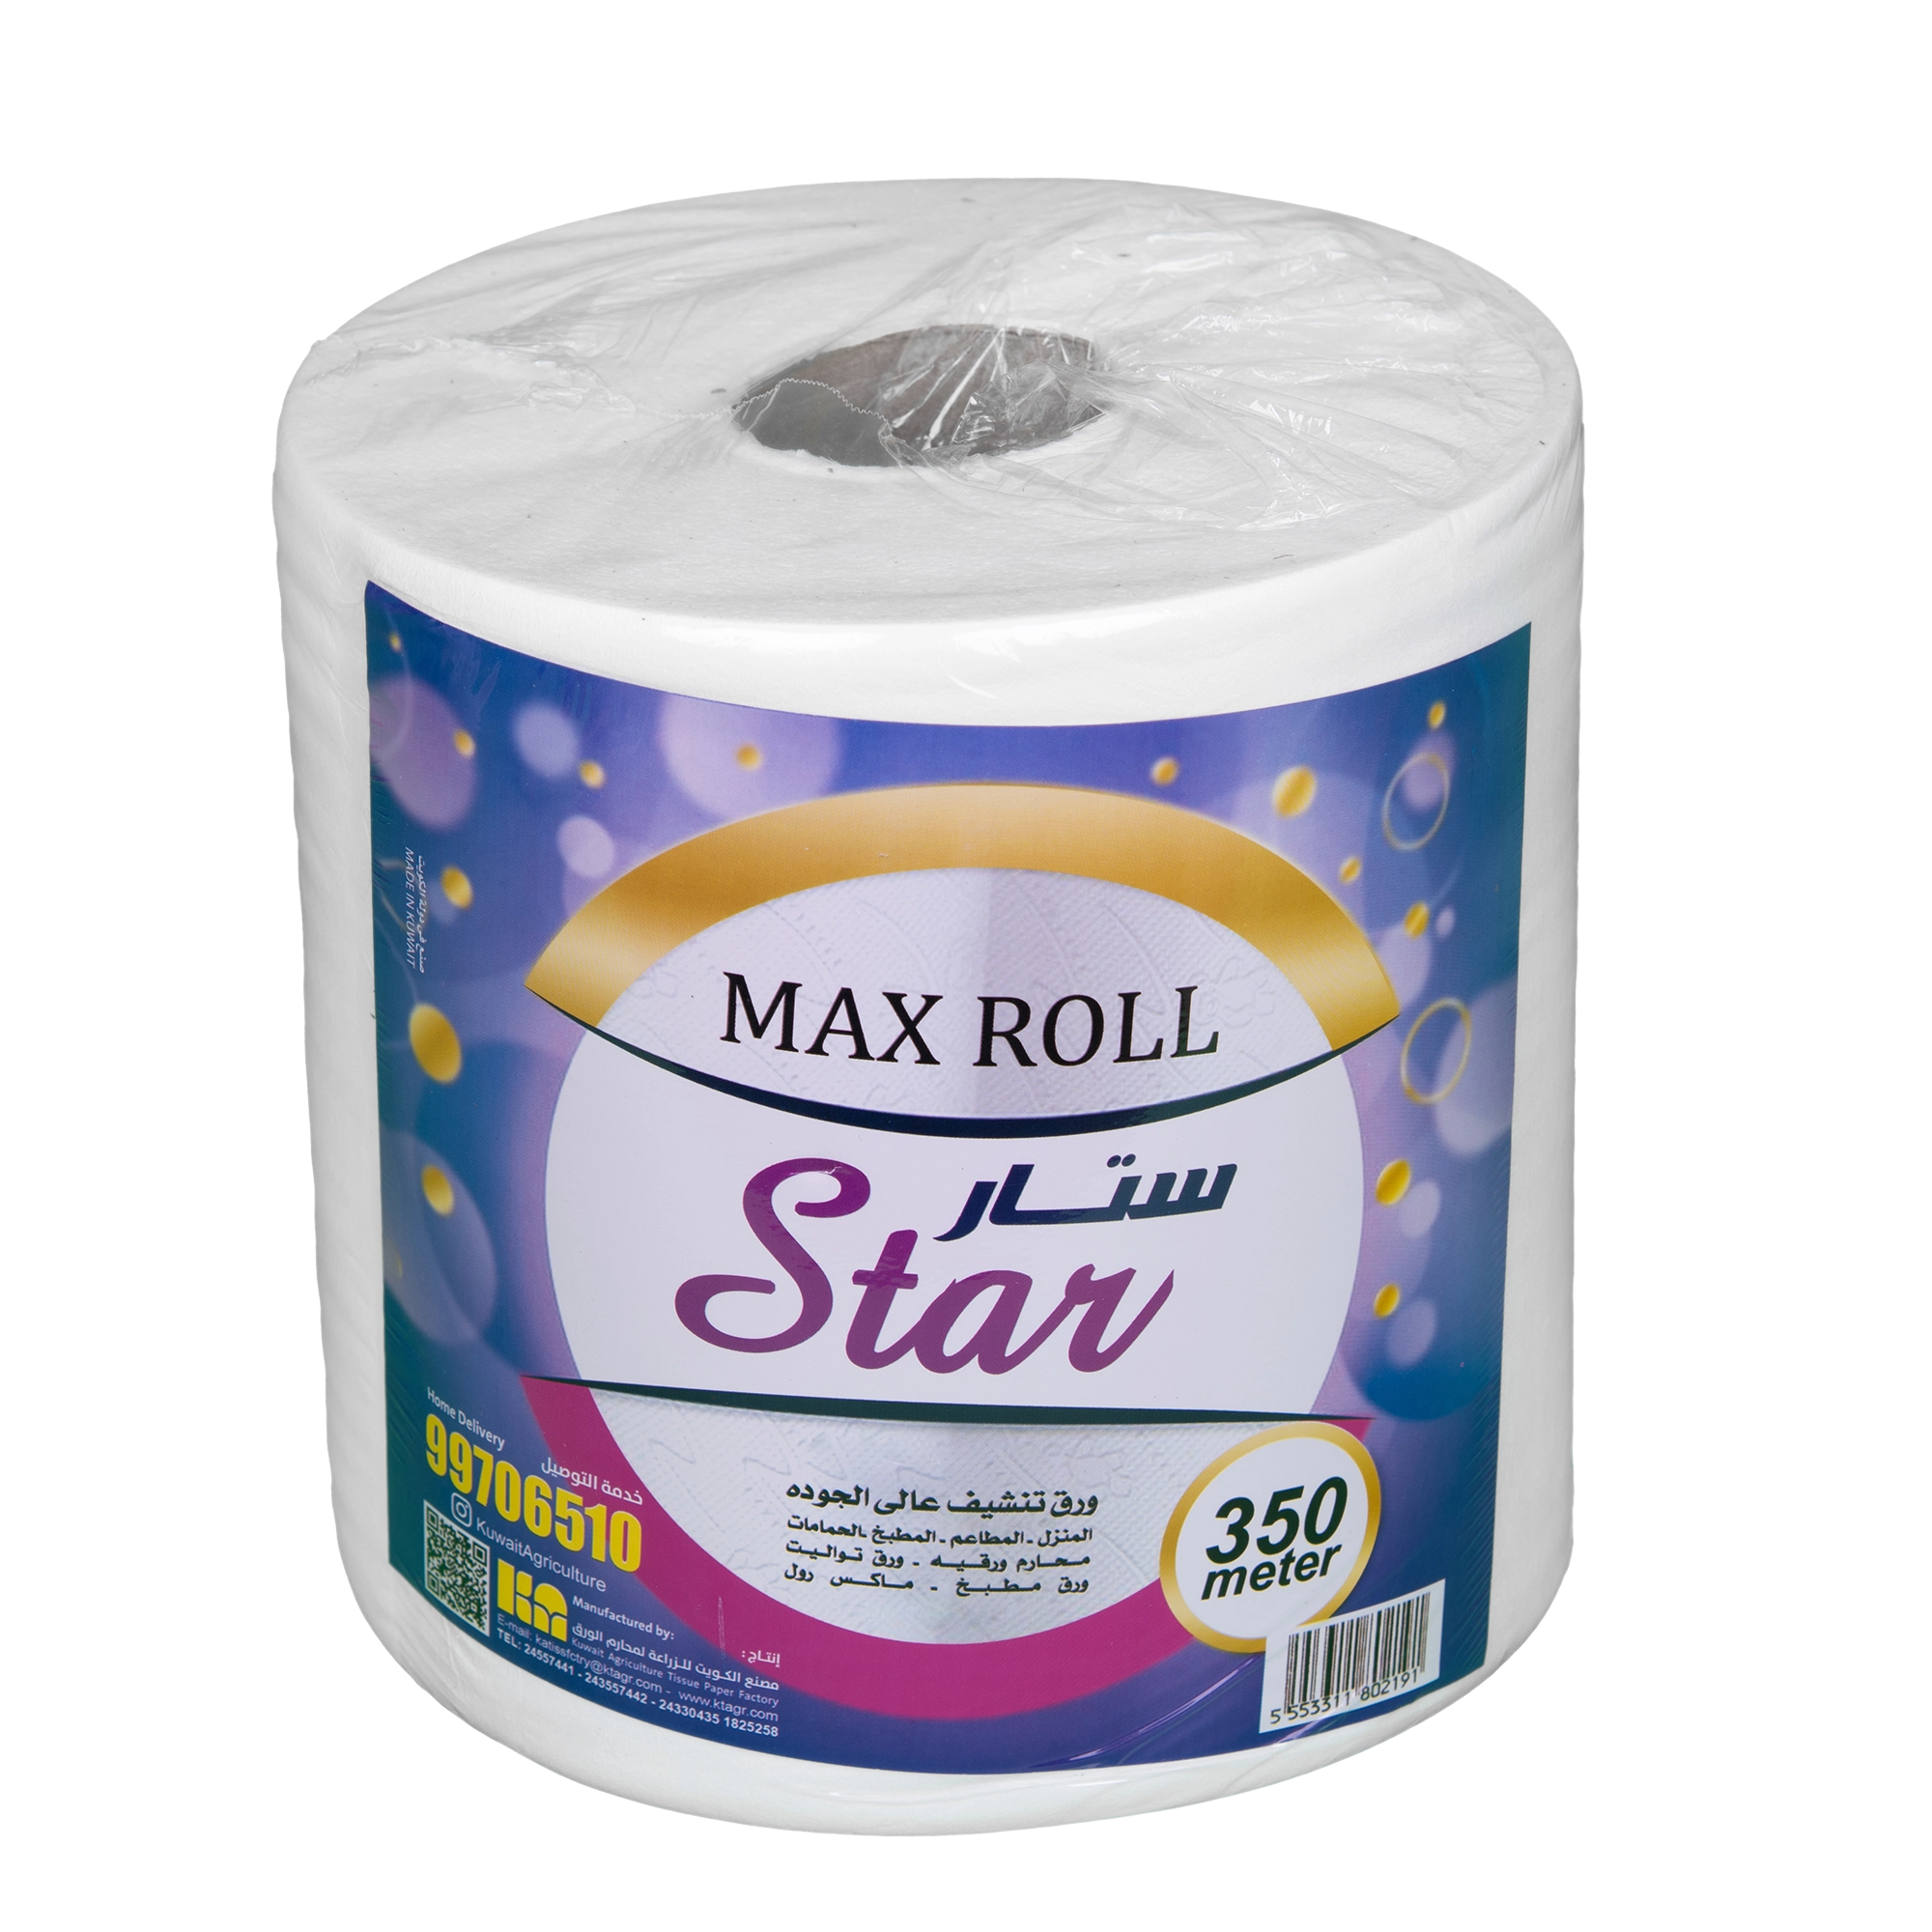 KAC - Star Maxi Roll 350 mtr